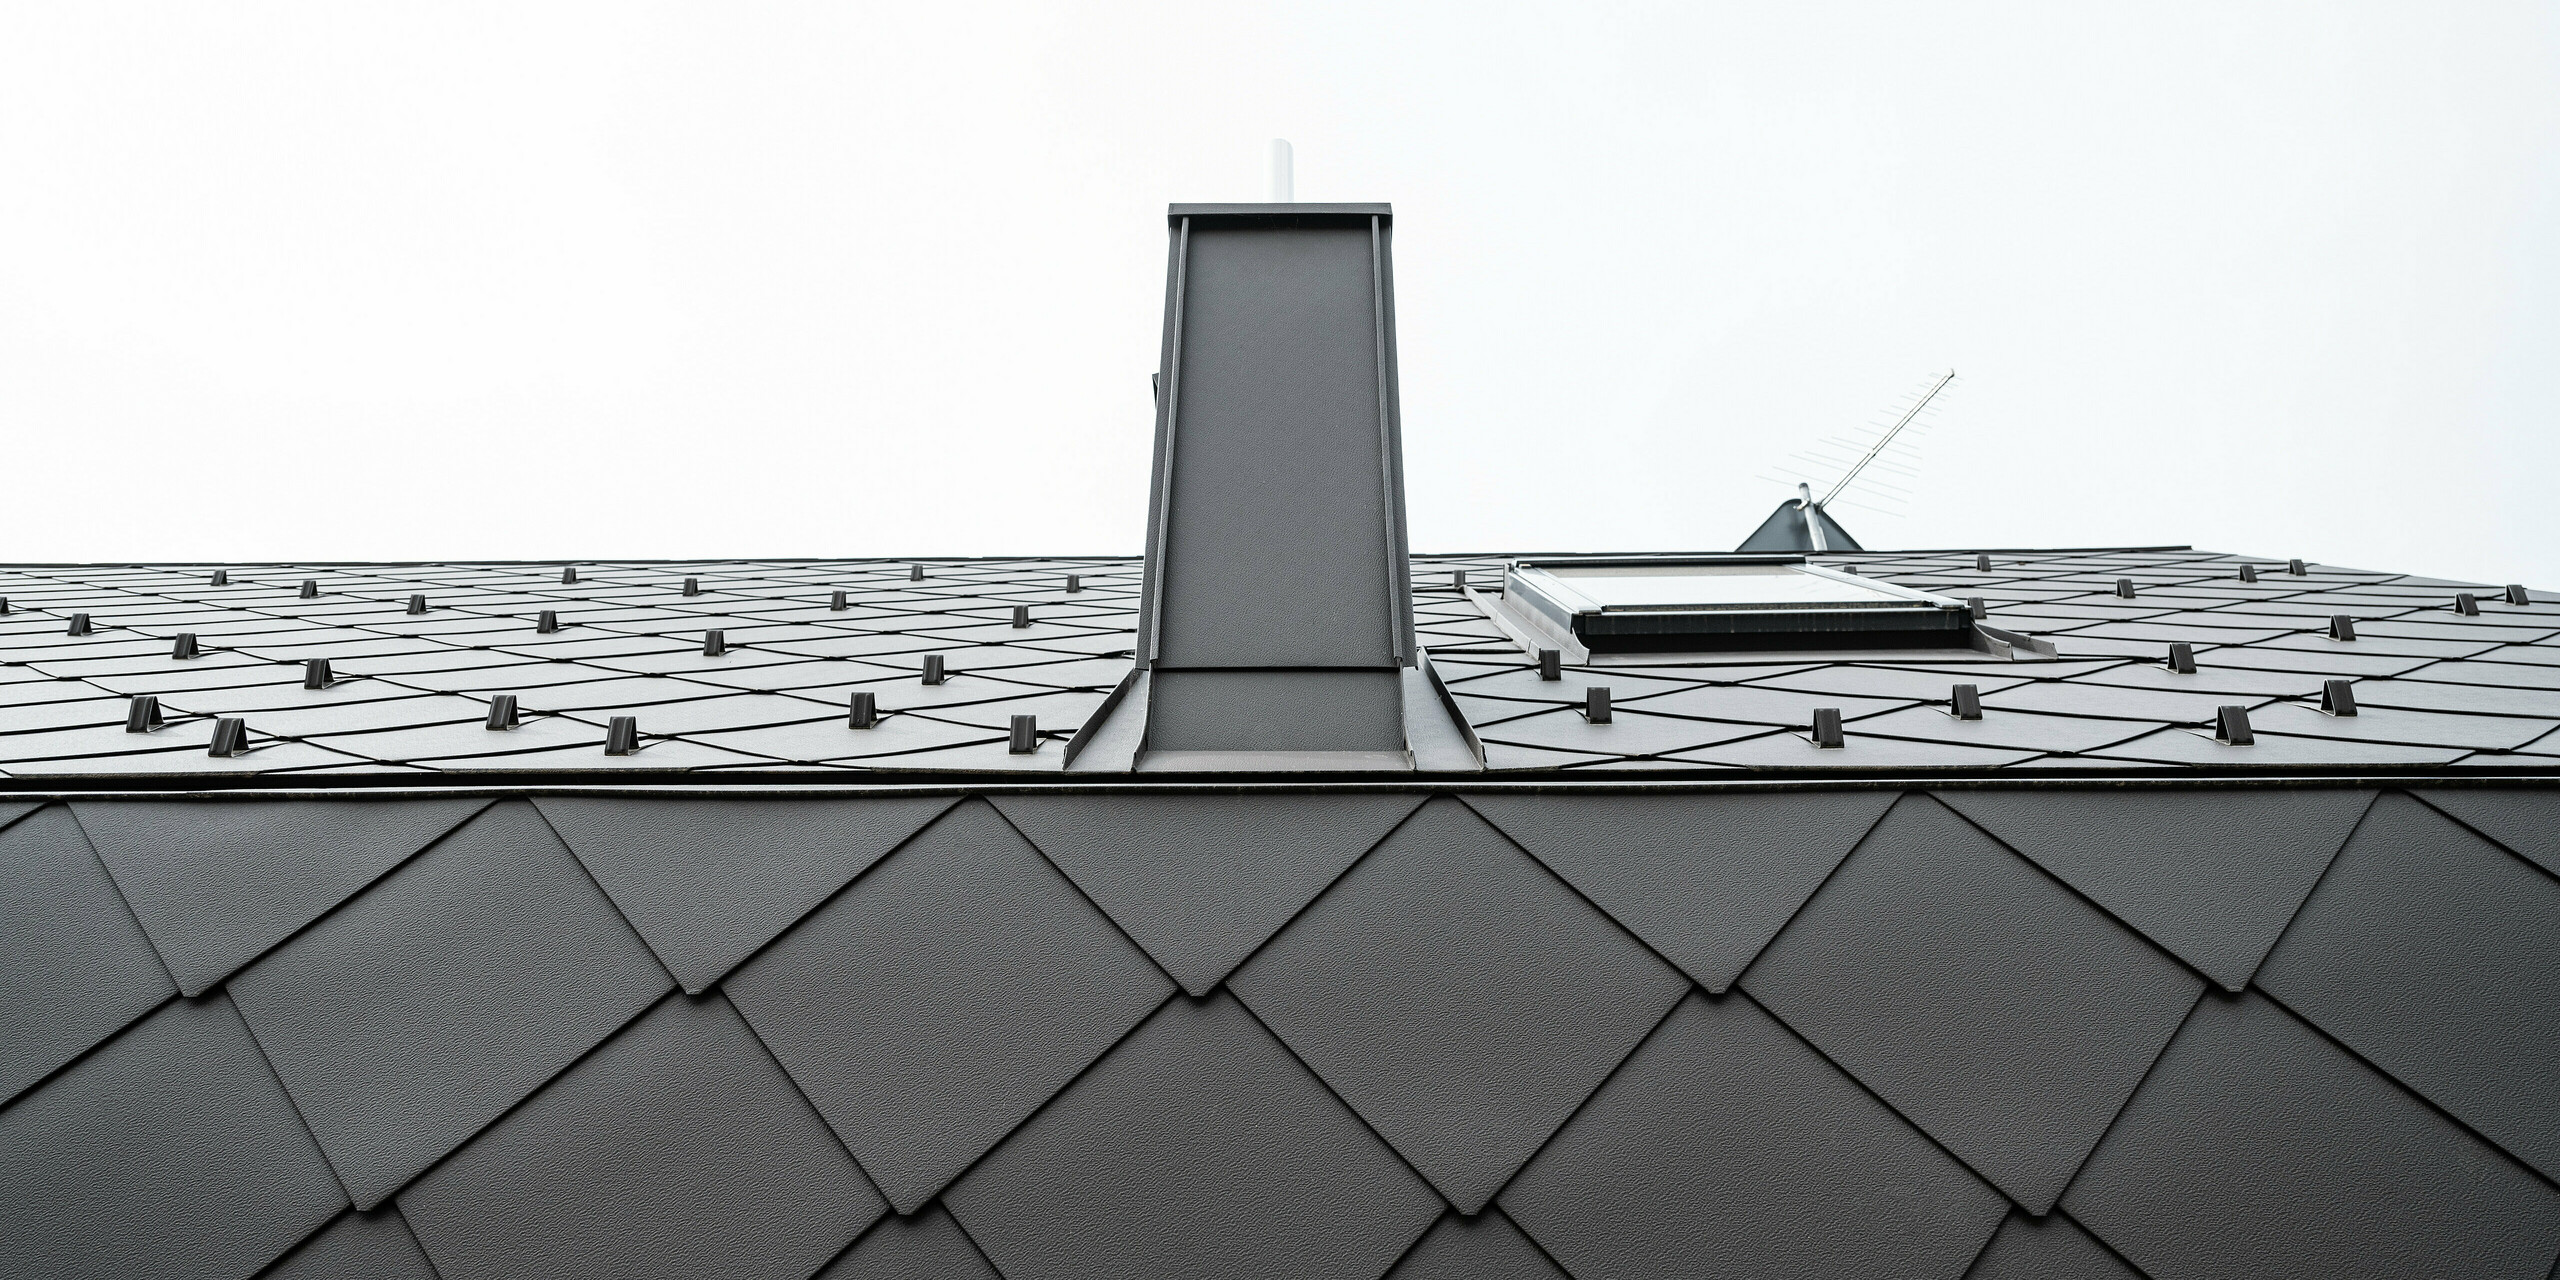 Detailansicht eines modernen Daches aus Blech. Das Gebäude ist ausgestattet mit PREFA Dach- und Wandrauten 44x44 in der Farbe P.10 Braun. in Anthrazit. Die Aufnahme zeigt die präzise Verlegung der Aluminiumrauten, die durch ihre einzigartige Form charakterisiert sind. Zentral im Bild ist ein schmaler Schornstein aus Aluminium zu sehen. An der Traufe wurden die Rauten geknickt, was für eine homogene Gebäudehülle sorgt.